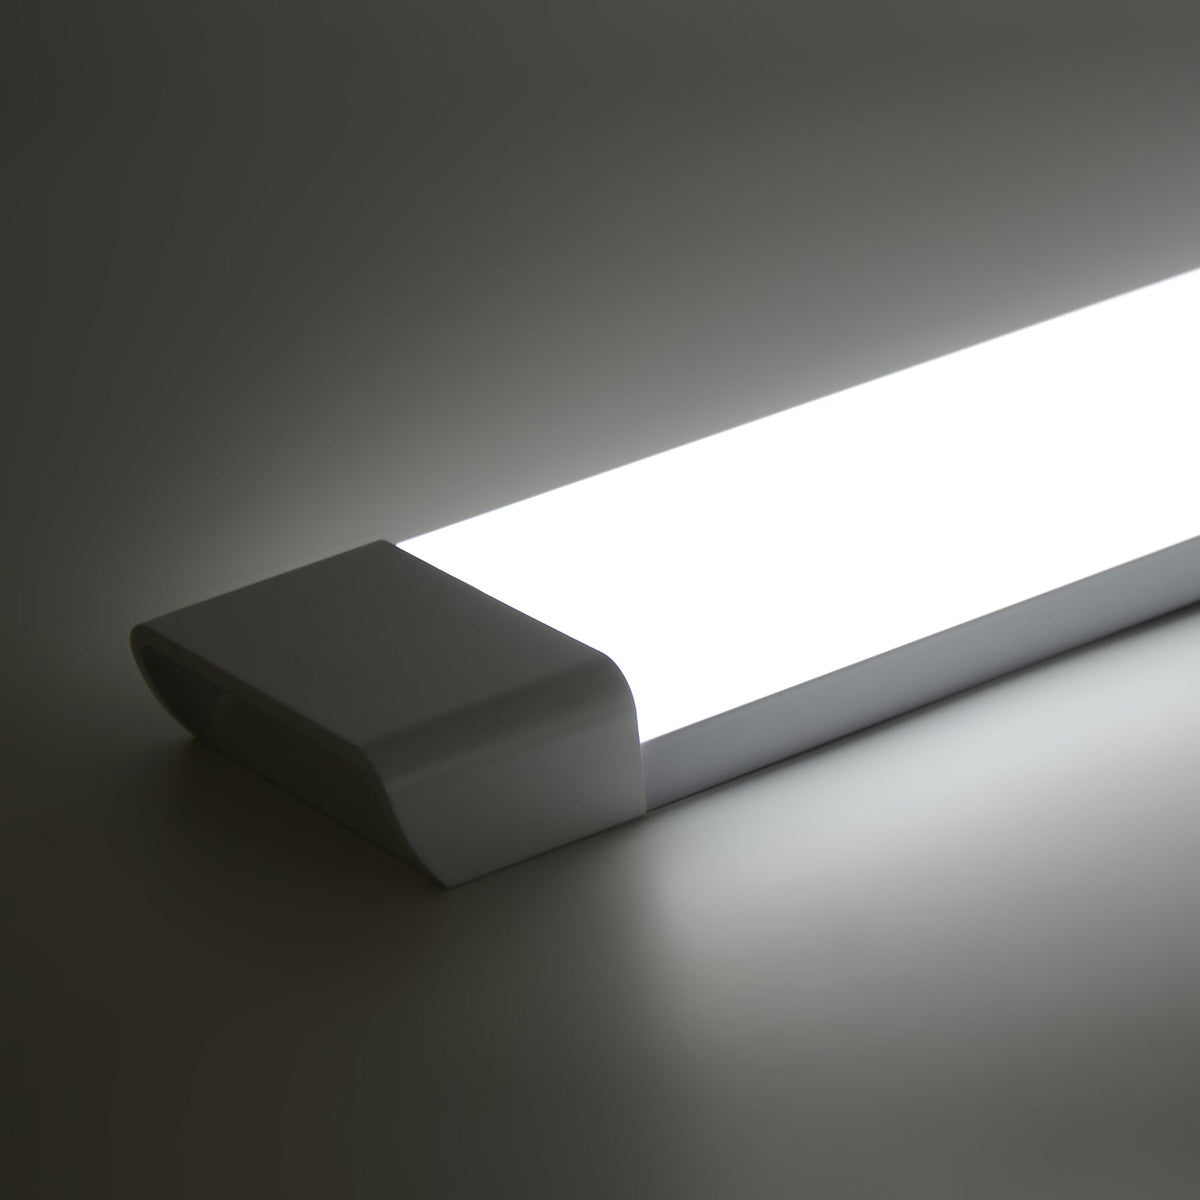 G.W.S. LED LED Batten Lights 1FT / Day White (6000K) / 1 LED Batten Light